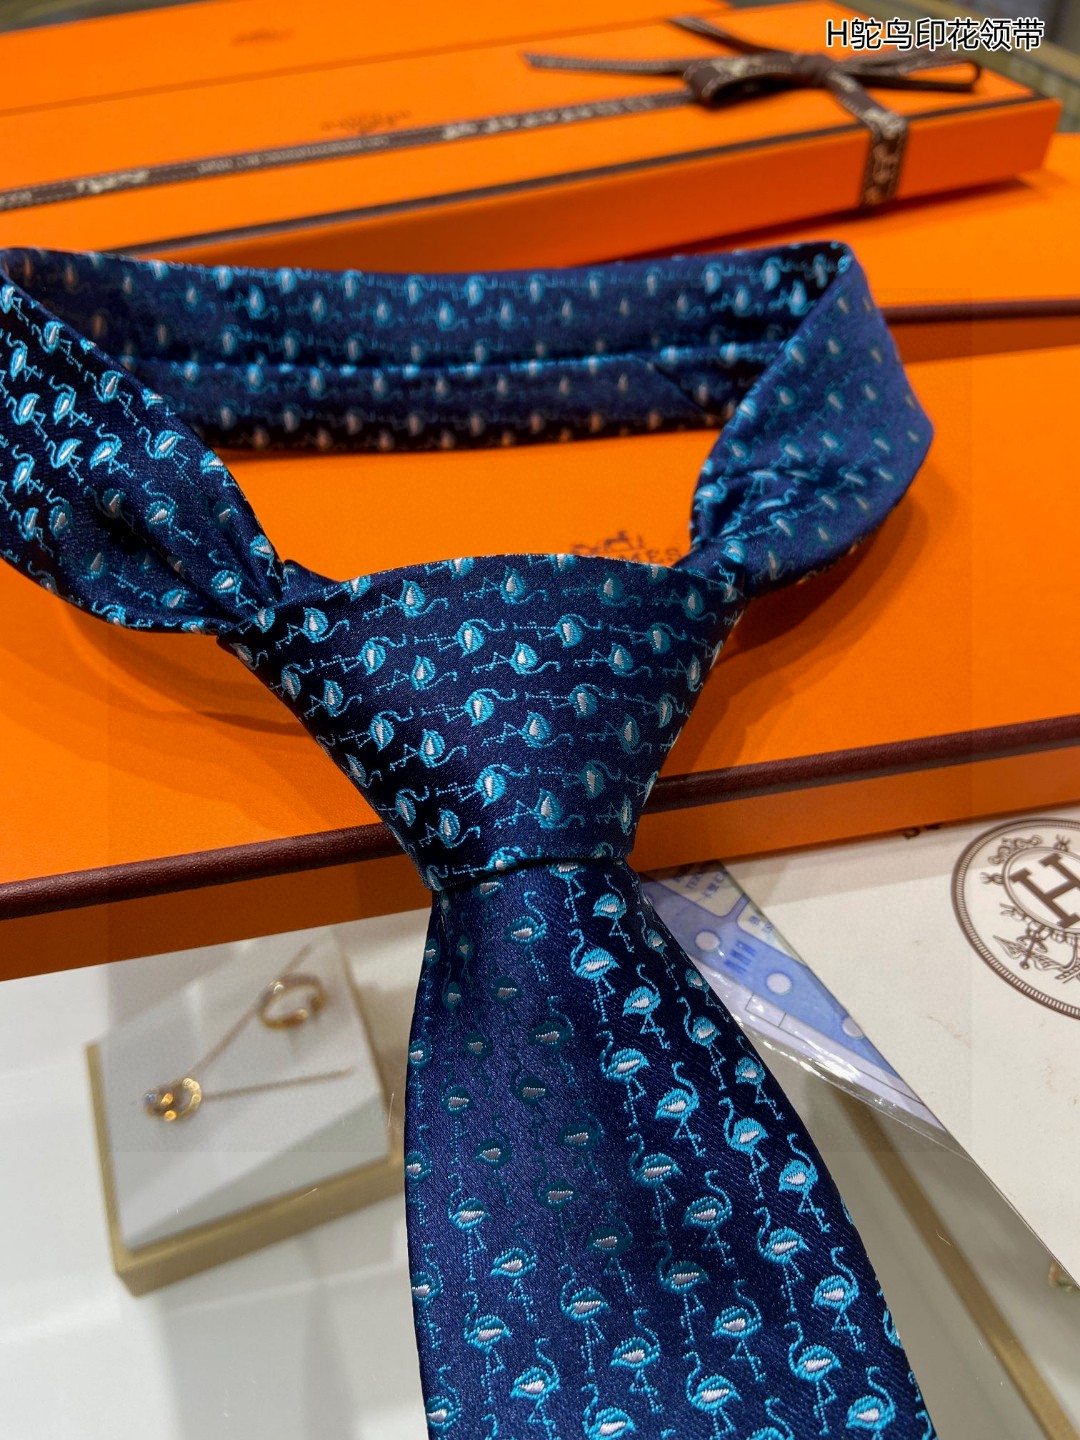 特价男士新款领带系列H鸵鸟印花领带稀有H家每年都有一千条不同印花的领带面世从最初的多以几何图案表现骑术活